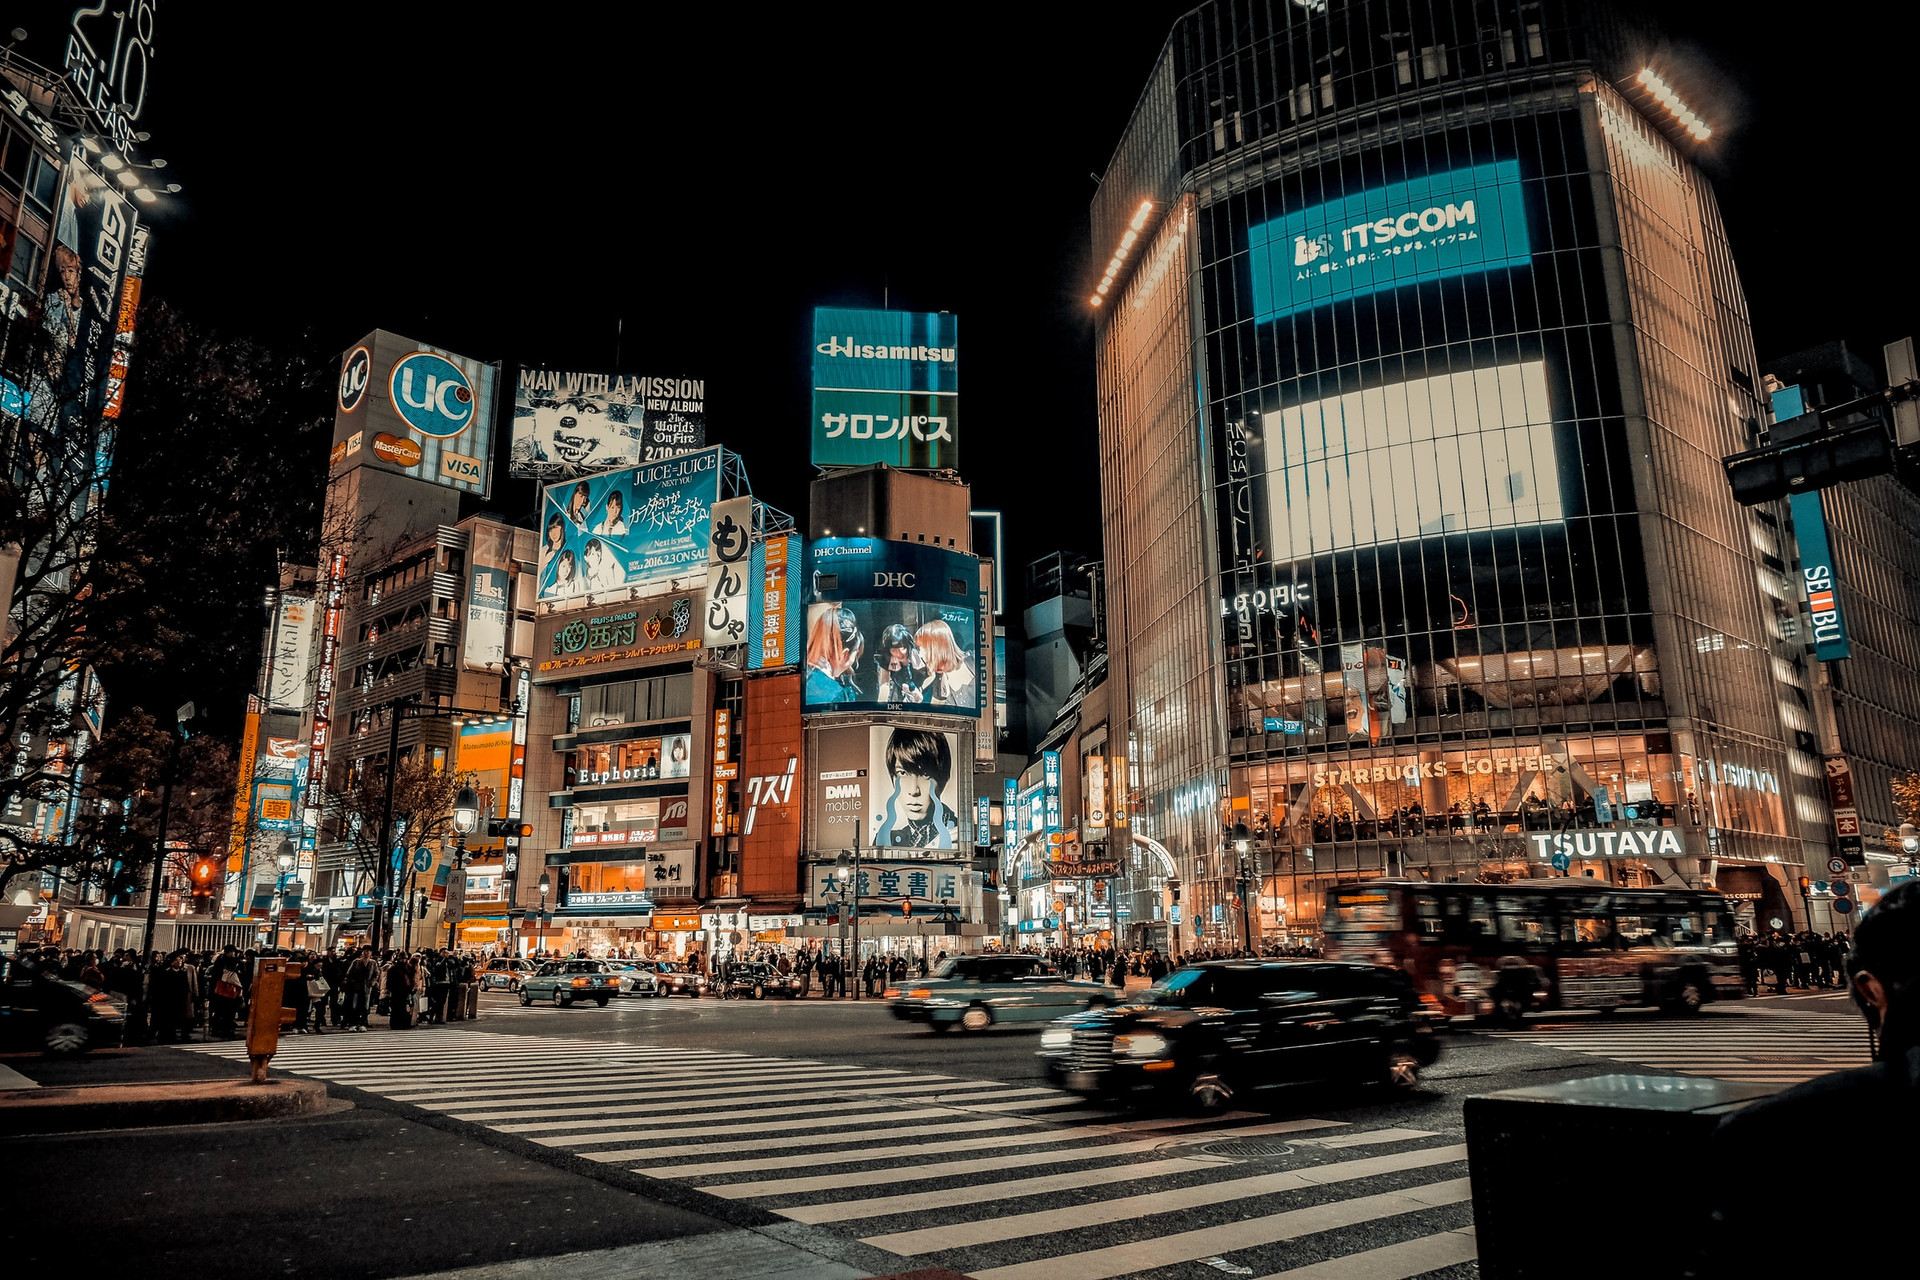 Con đường Shibuya nổi tiếng với những khu phố sầm uất ở thủ đô Tokyo. Ảnh: Unsplash.